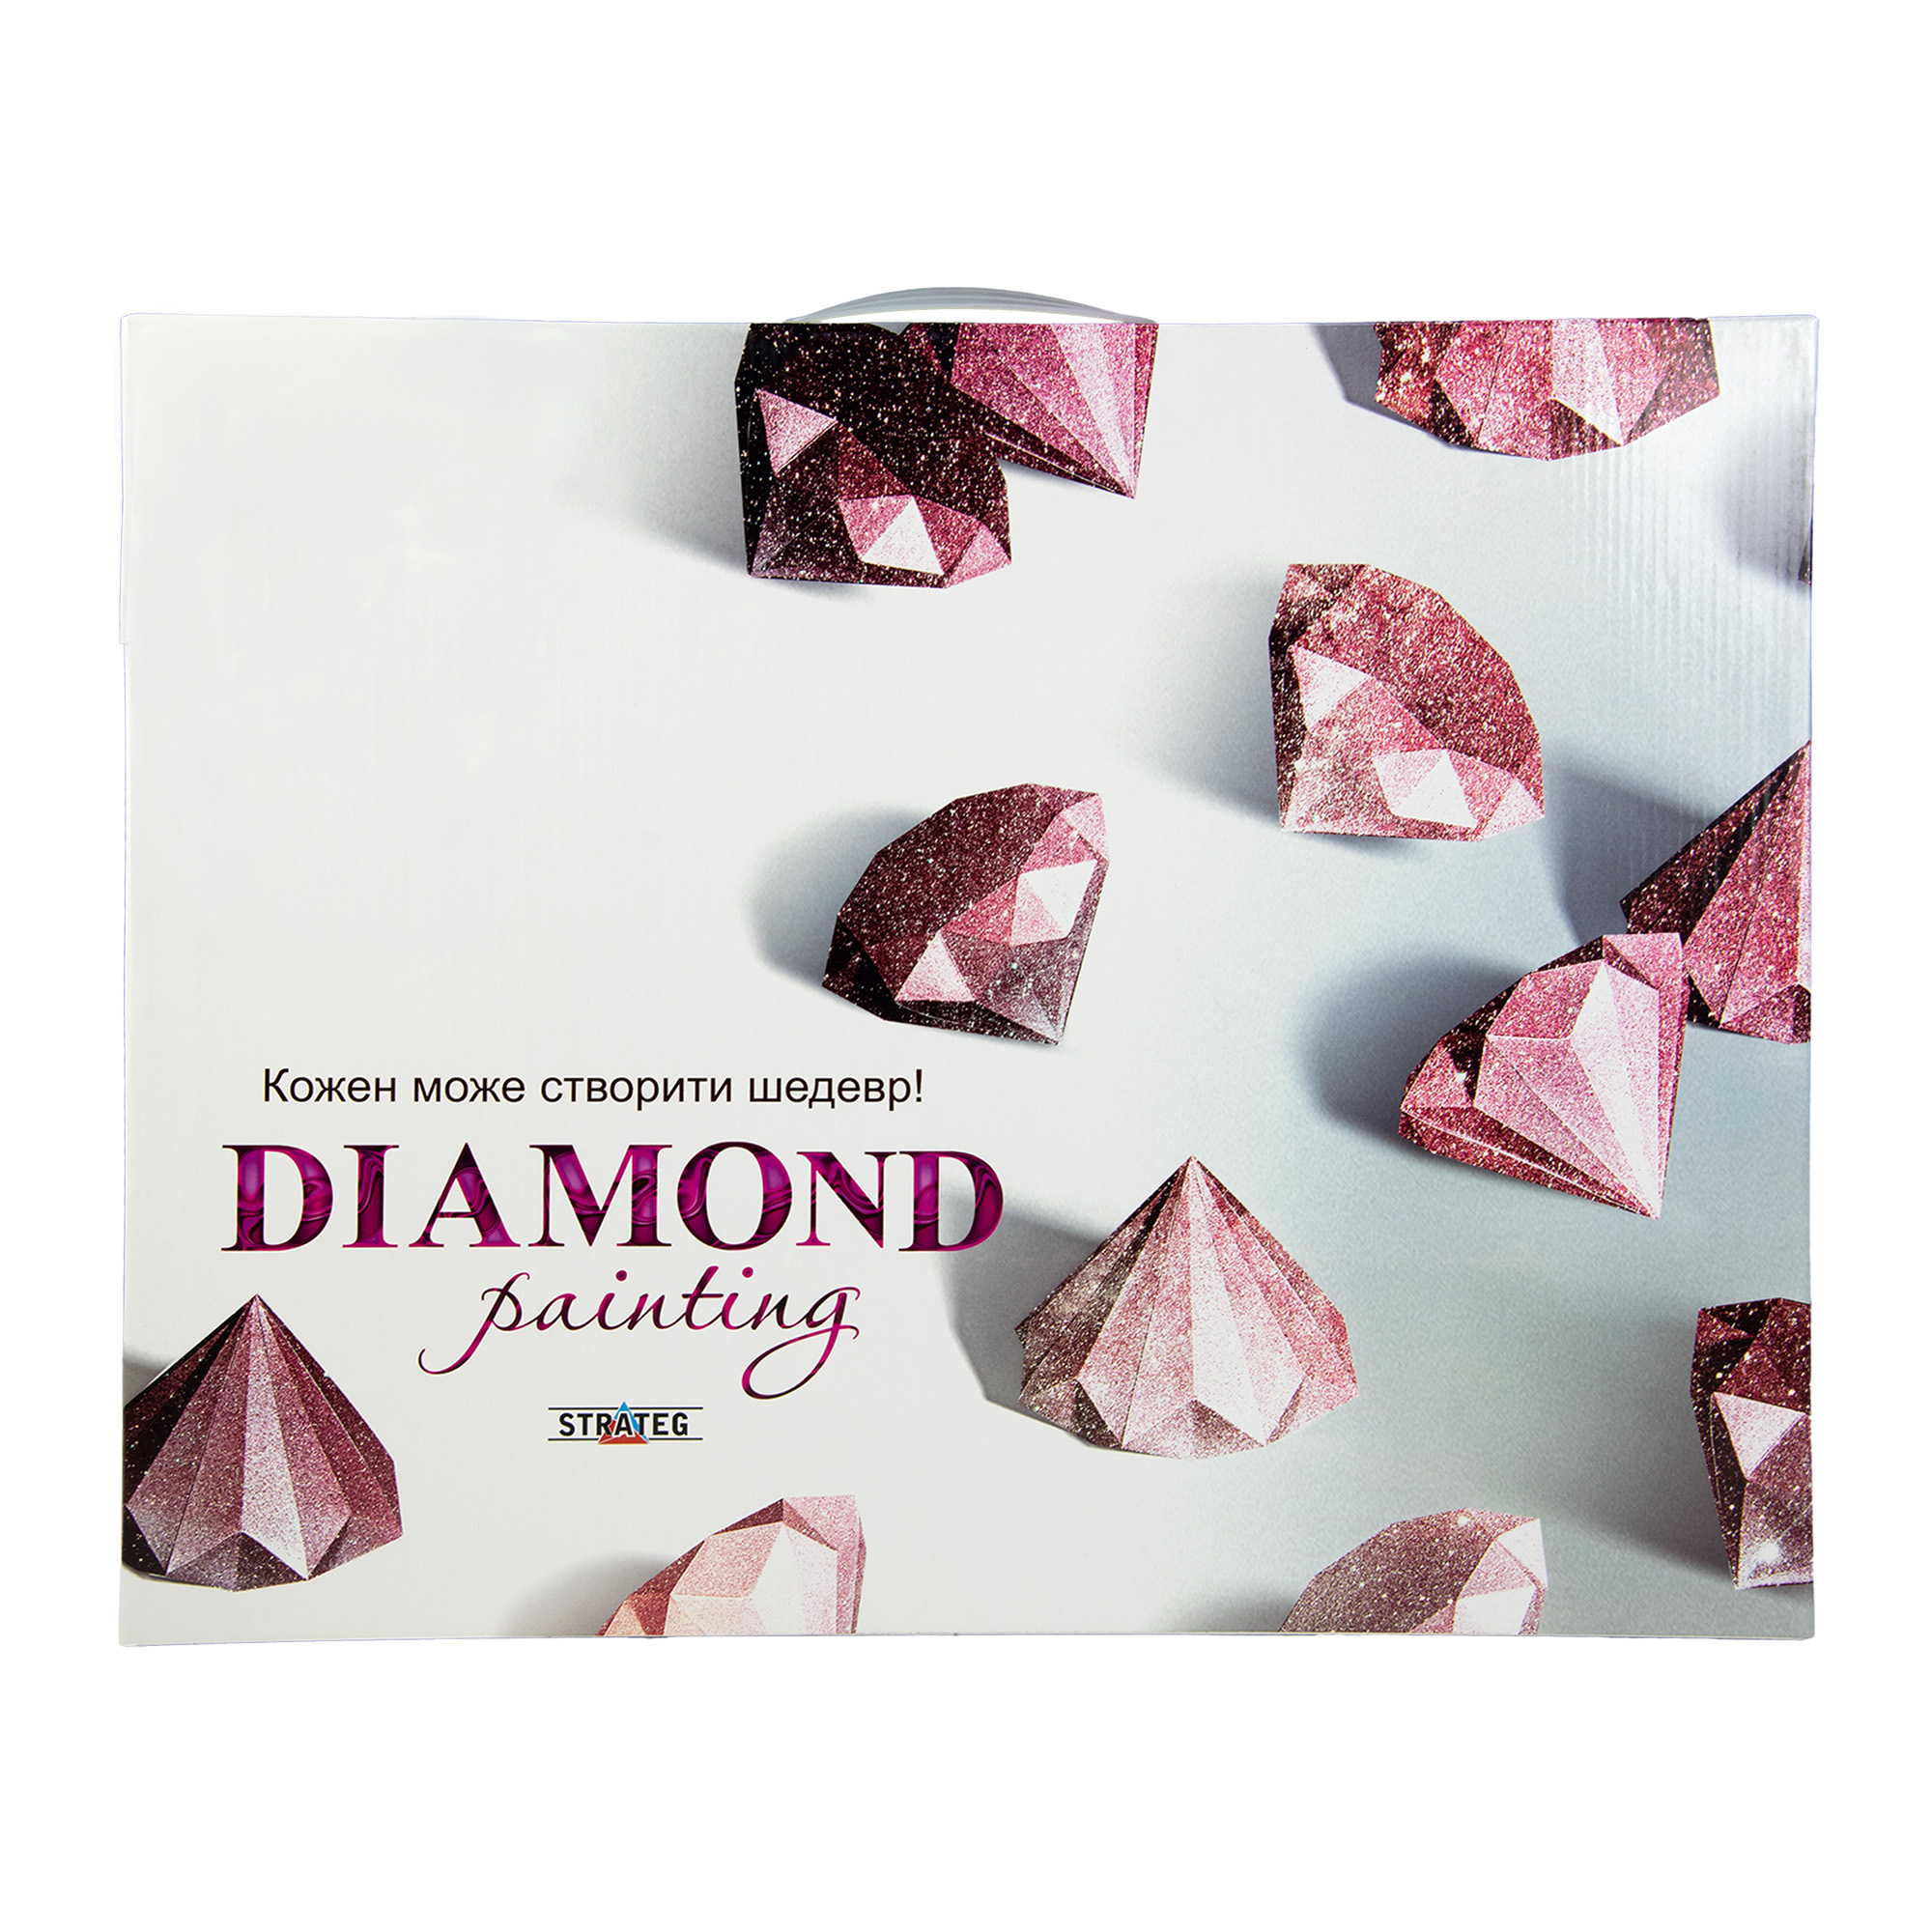 Diamantmosaik Strateg PREMIUM Heilige Dreifaltigkeit Größe 40x50 cm (SK86012)